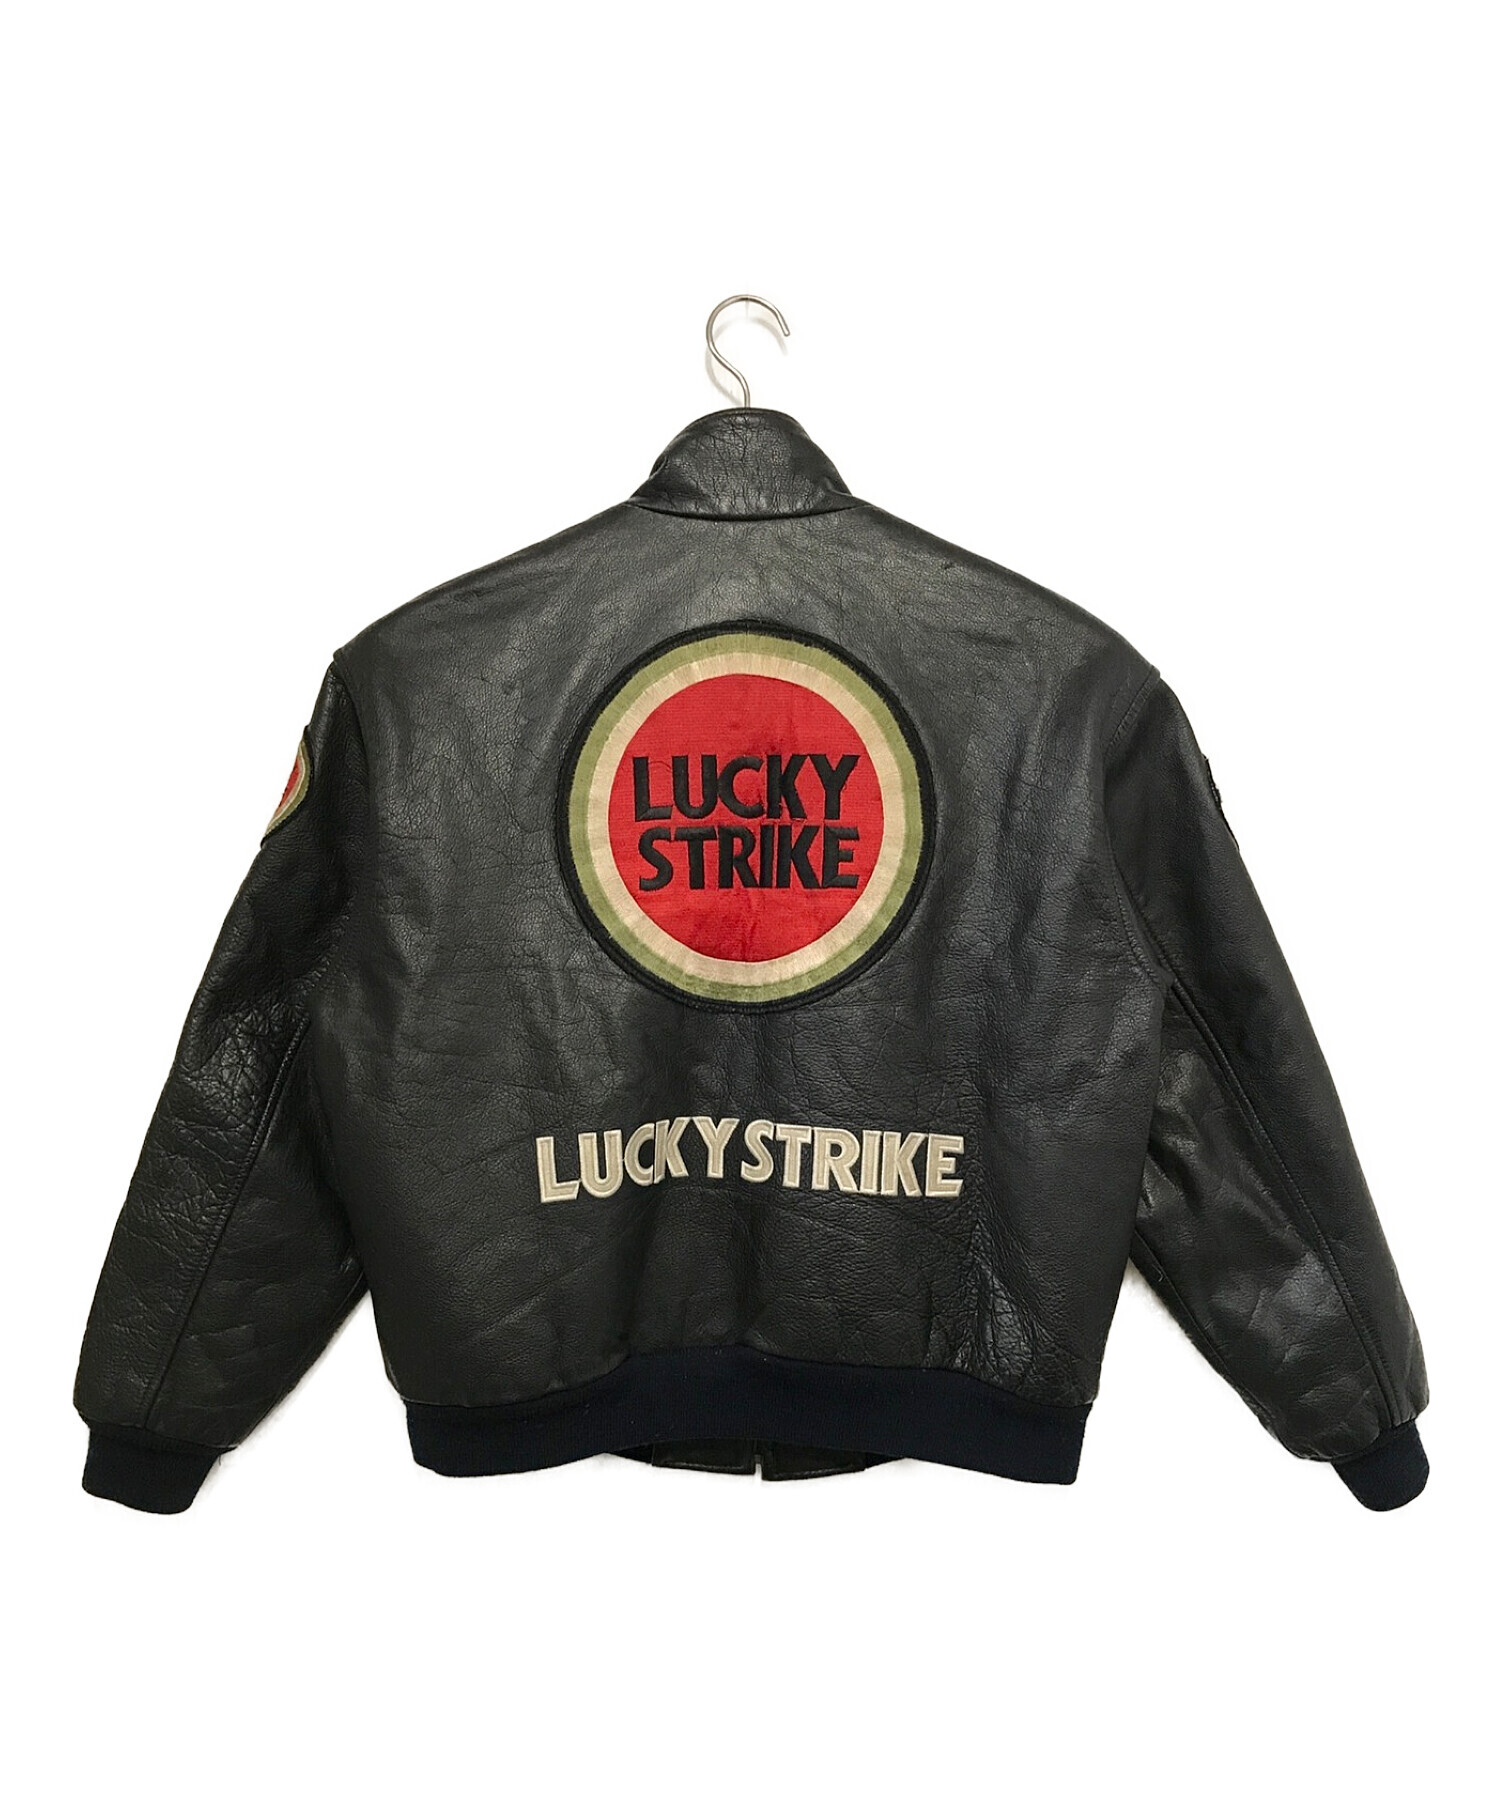 LUCKY STRIKE(ラッキーストライク)ライダースジャケット - ライダース ...